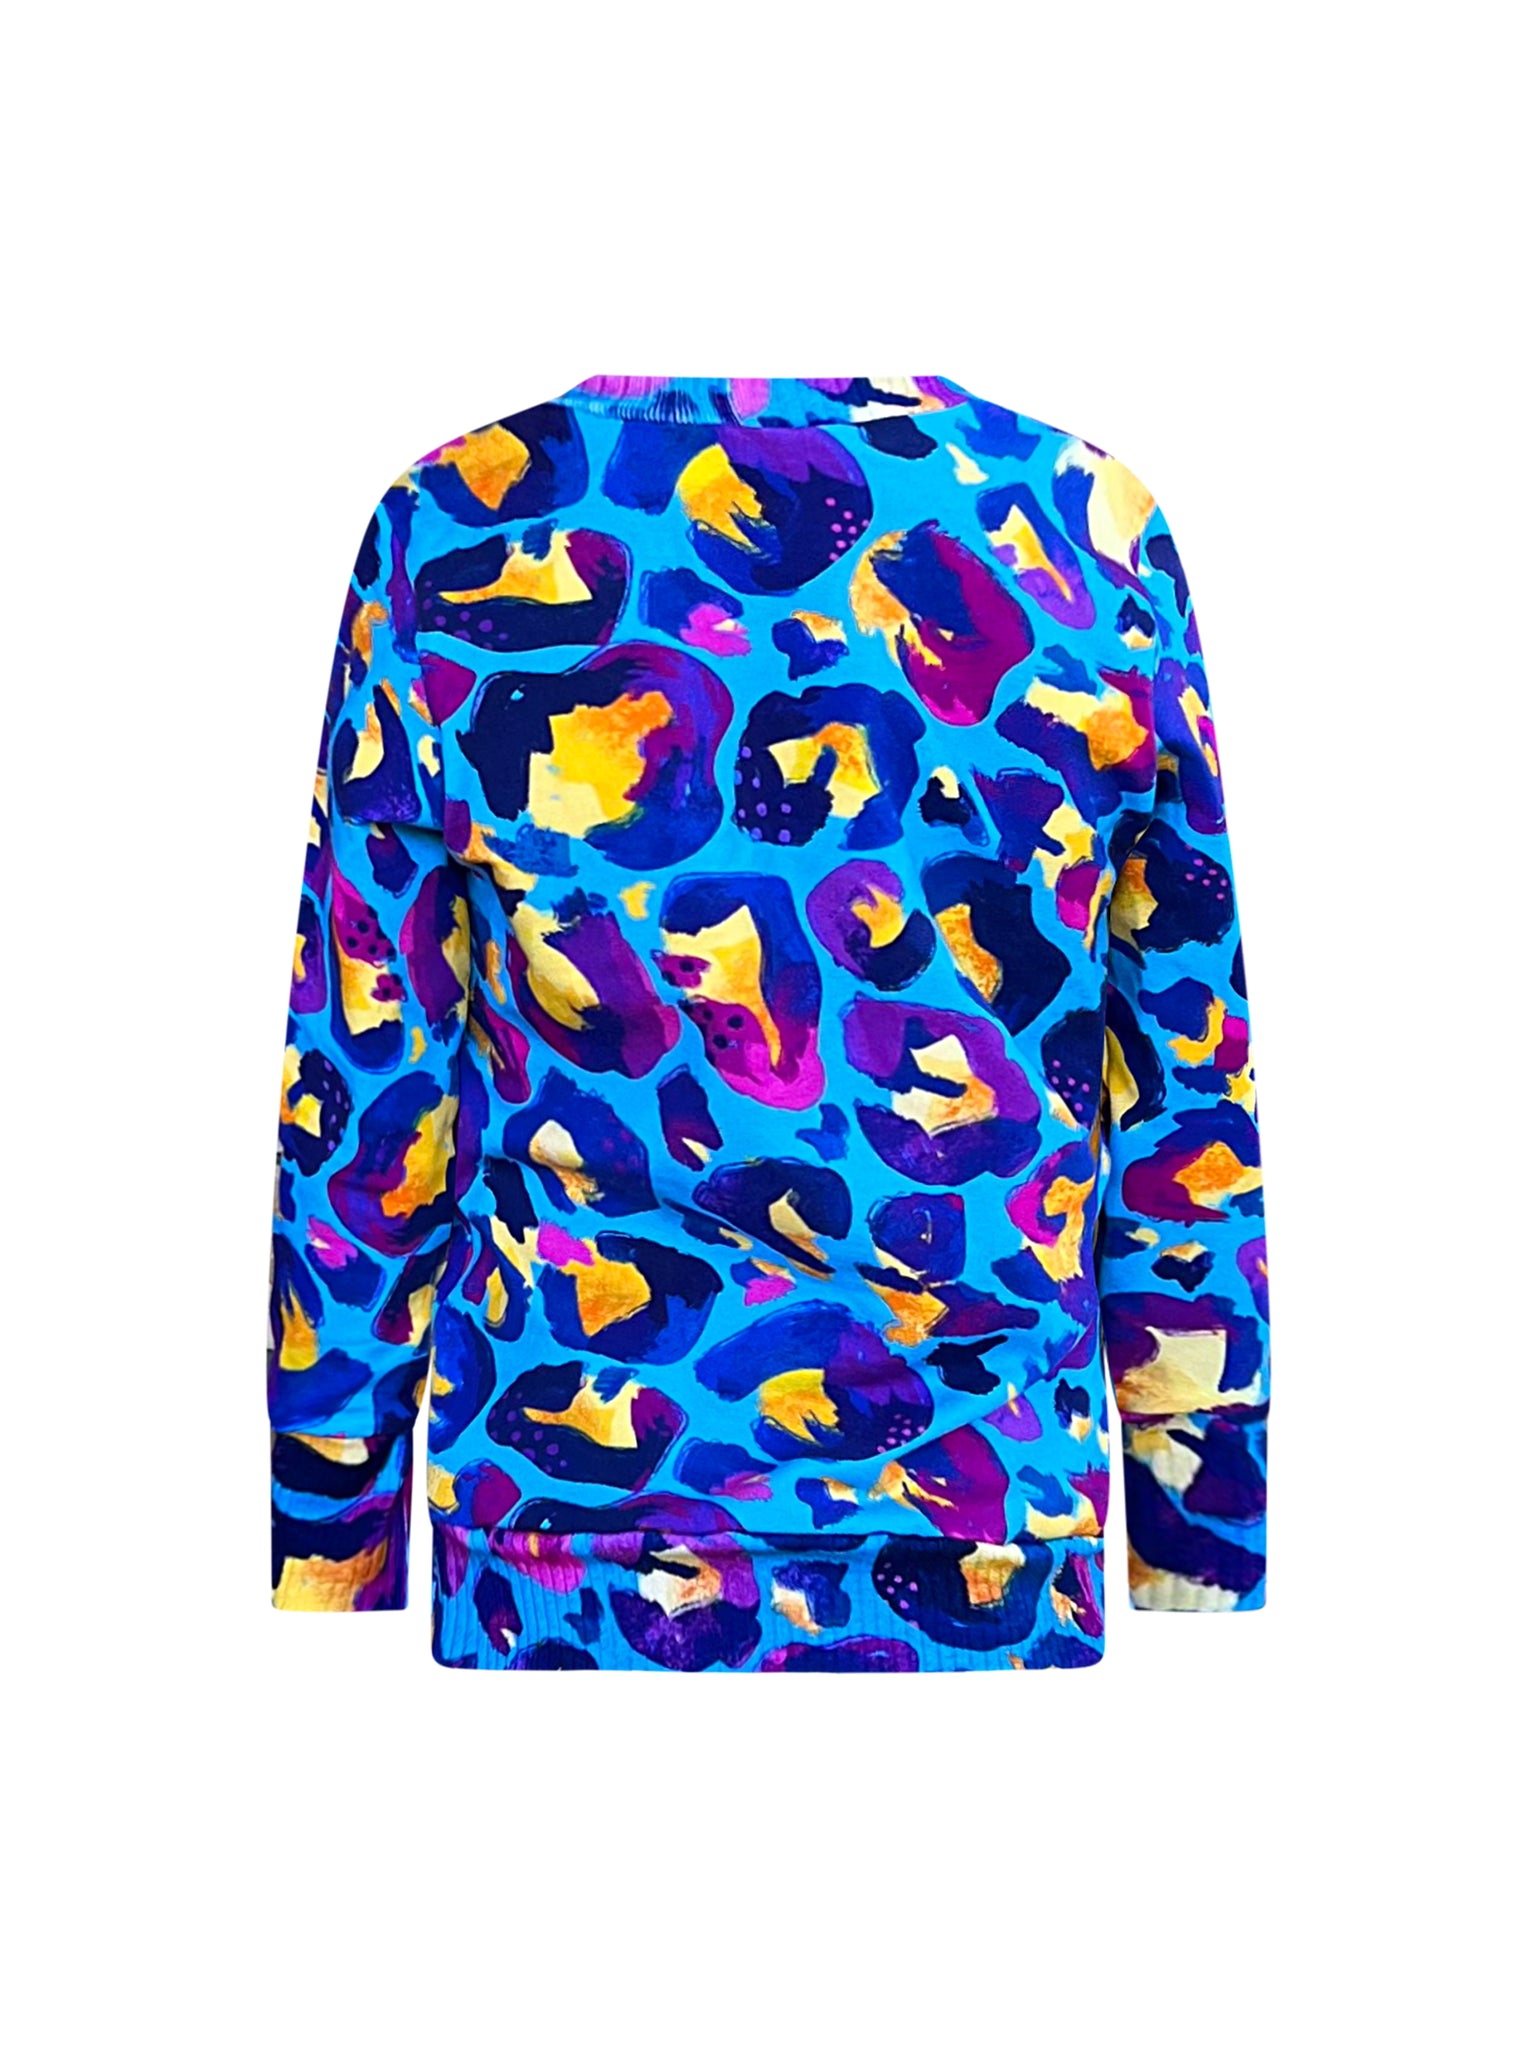 Kids Sweatshirt in 'Blue Leopard' - Kasey Rainbow